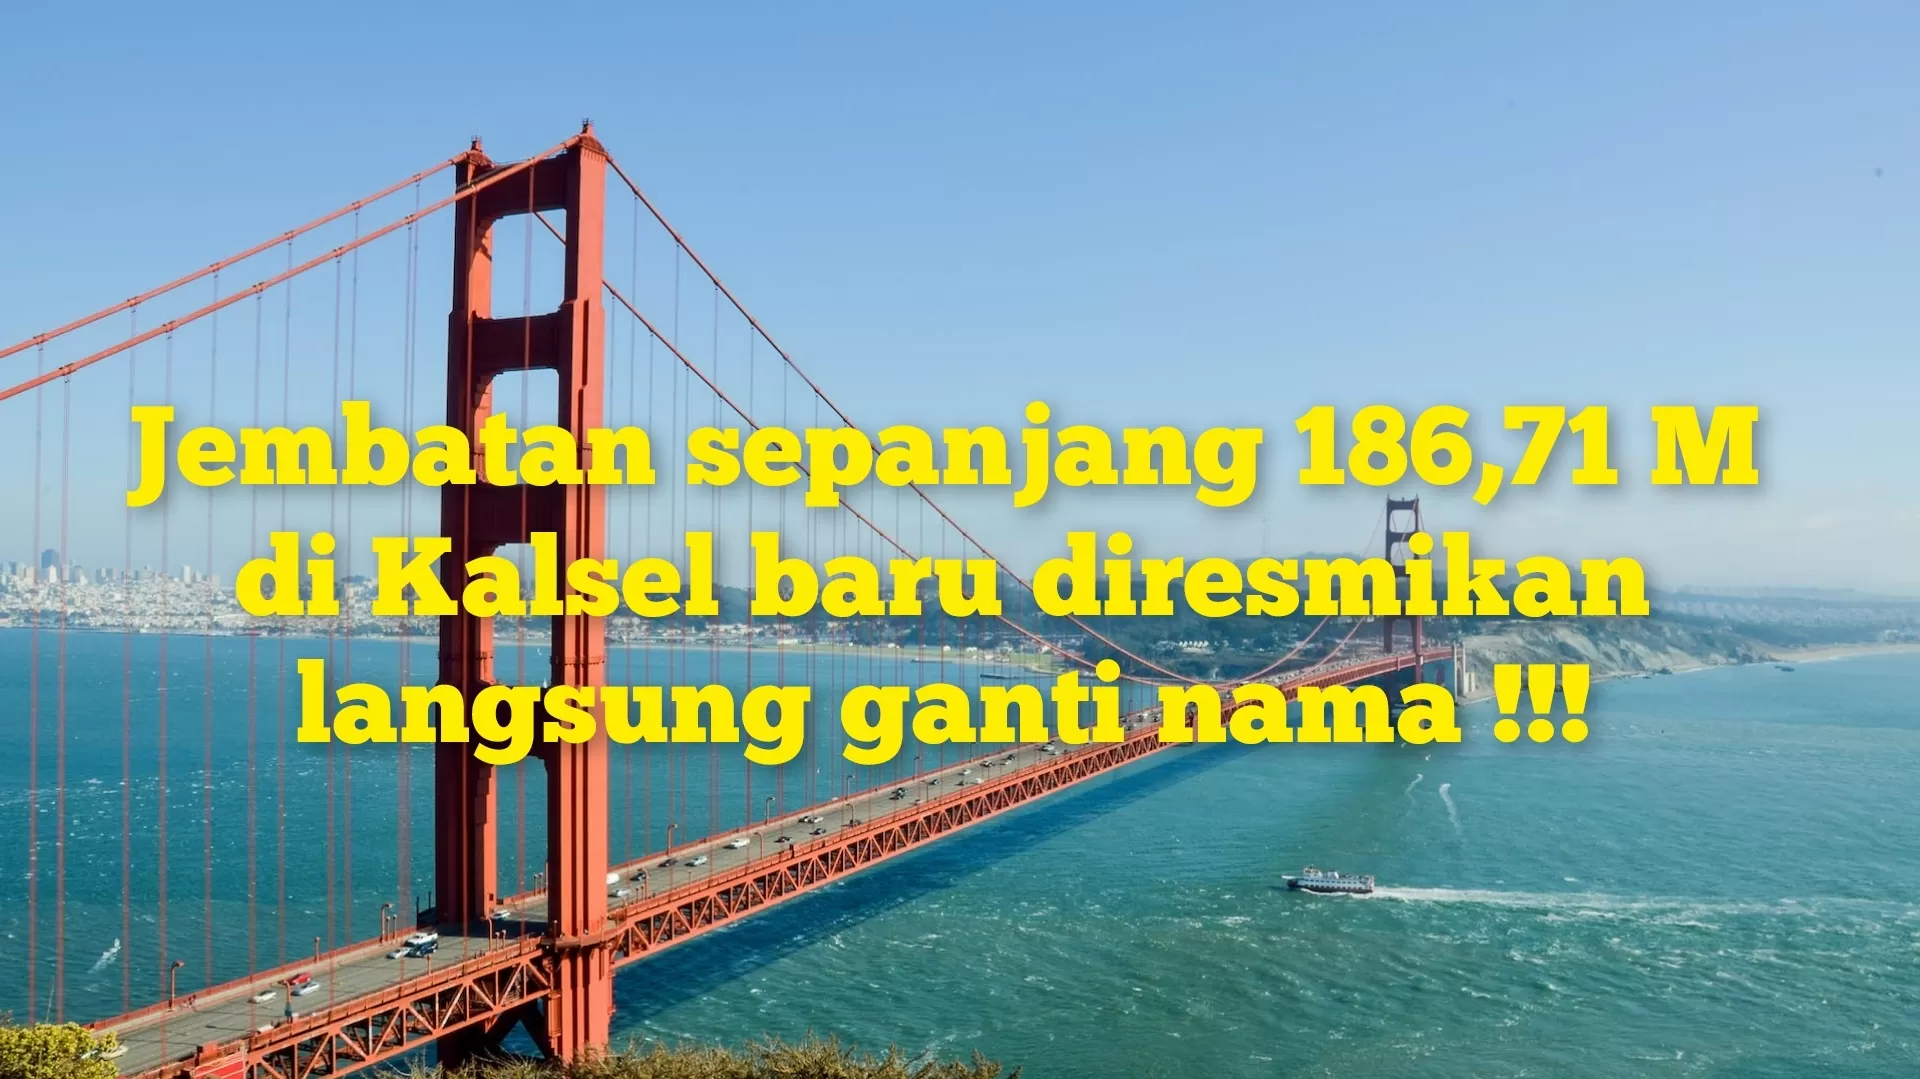 Baru Diresmikan, Jembatan Seharga Rp15,3 M di Kalimantan Selatan Ini Langsung Ganti Jadi Nama Pejabat! Lokasinya...